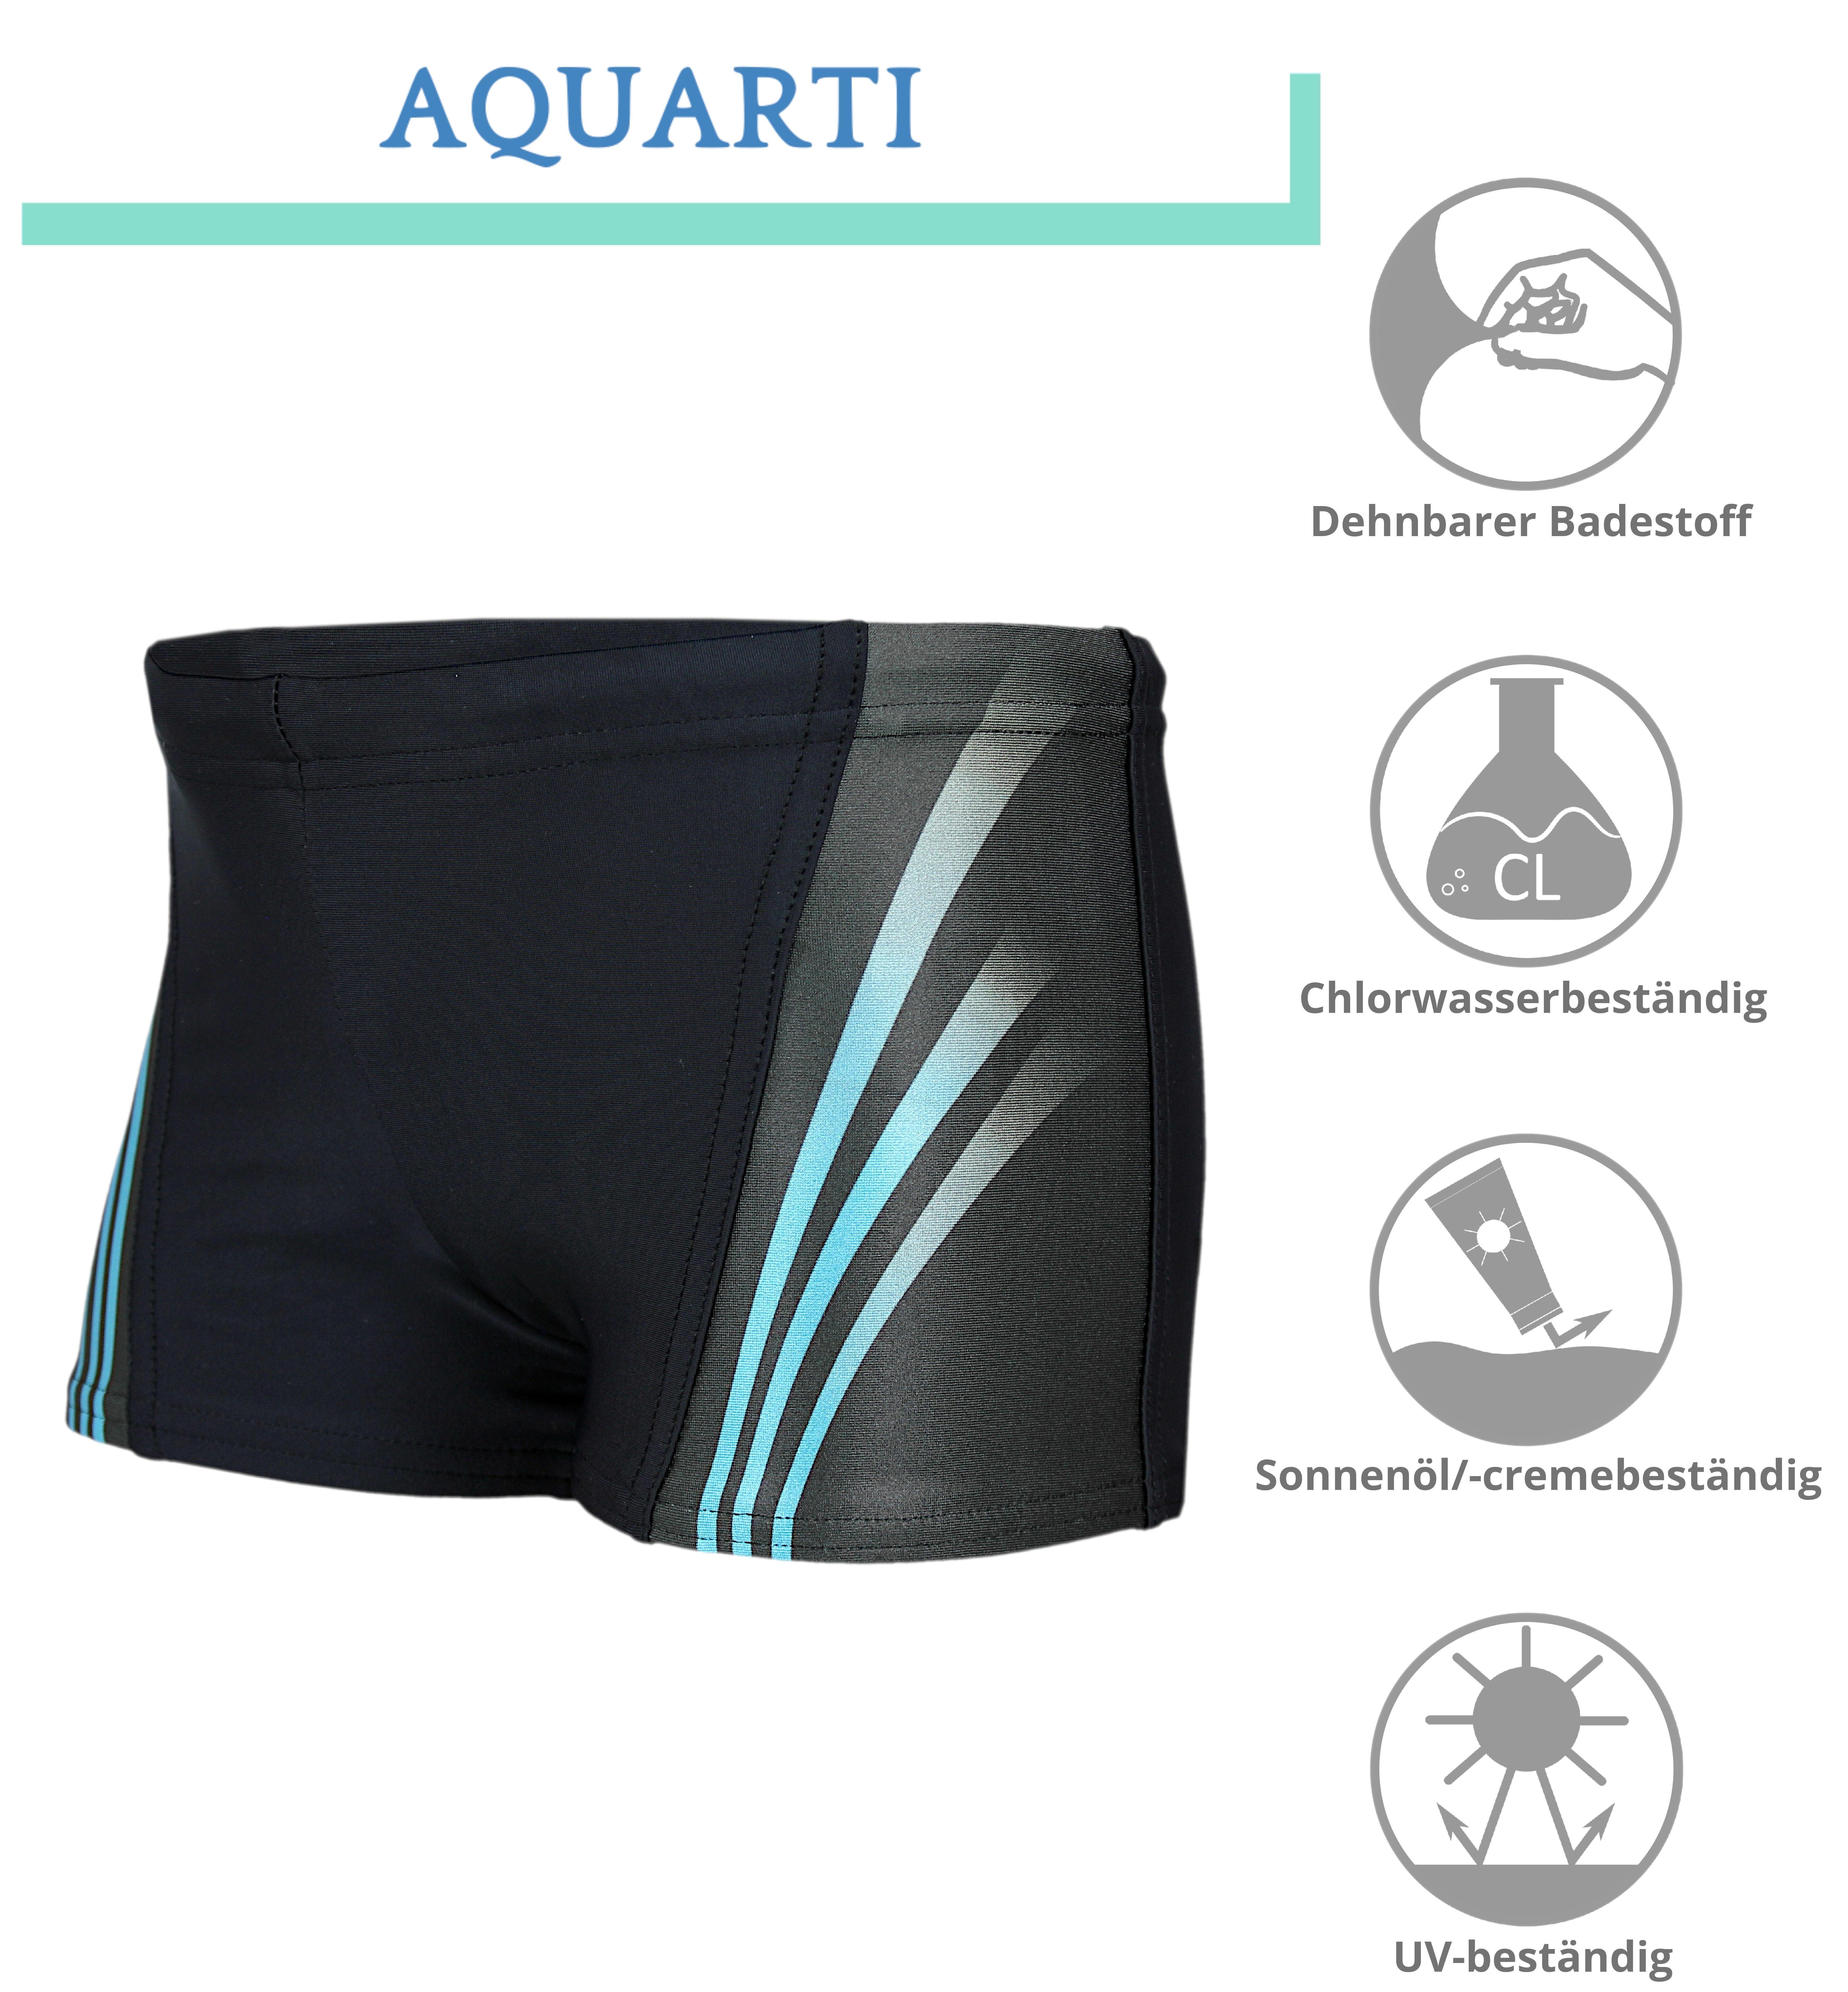 Jungen Aquarti Aquarti Einsätze Schwarz 16101 / Blau Kontrastfarbige Schwimmhose Badehose